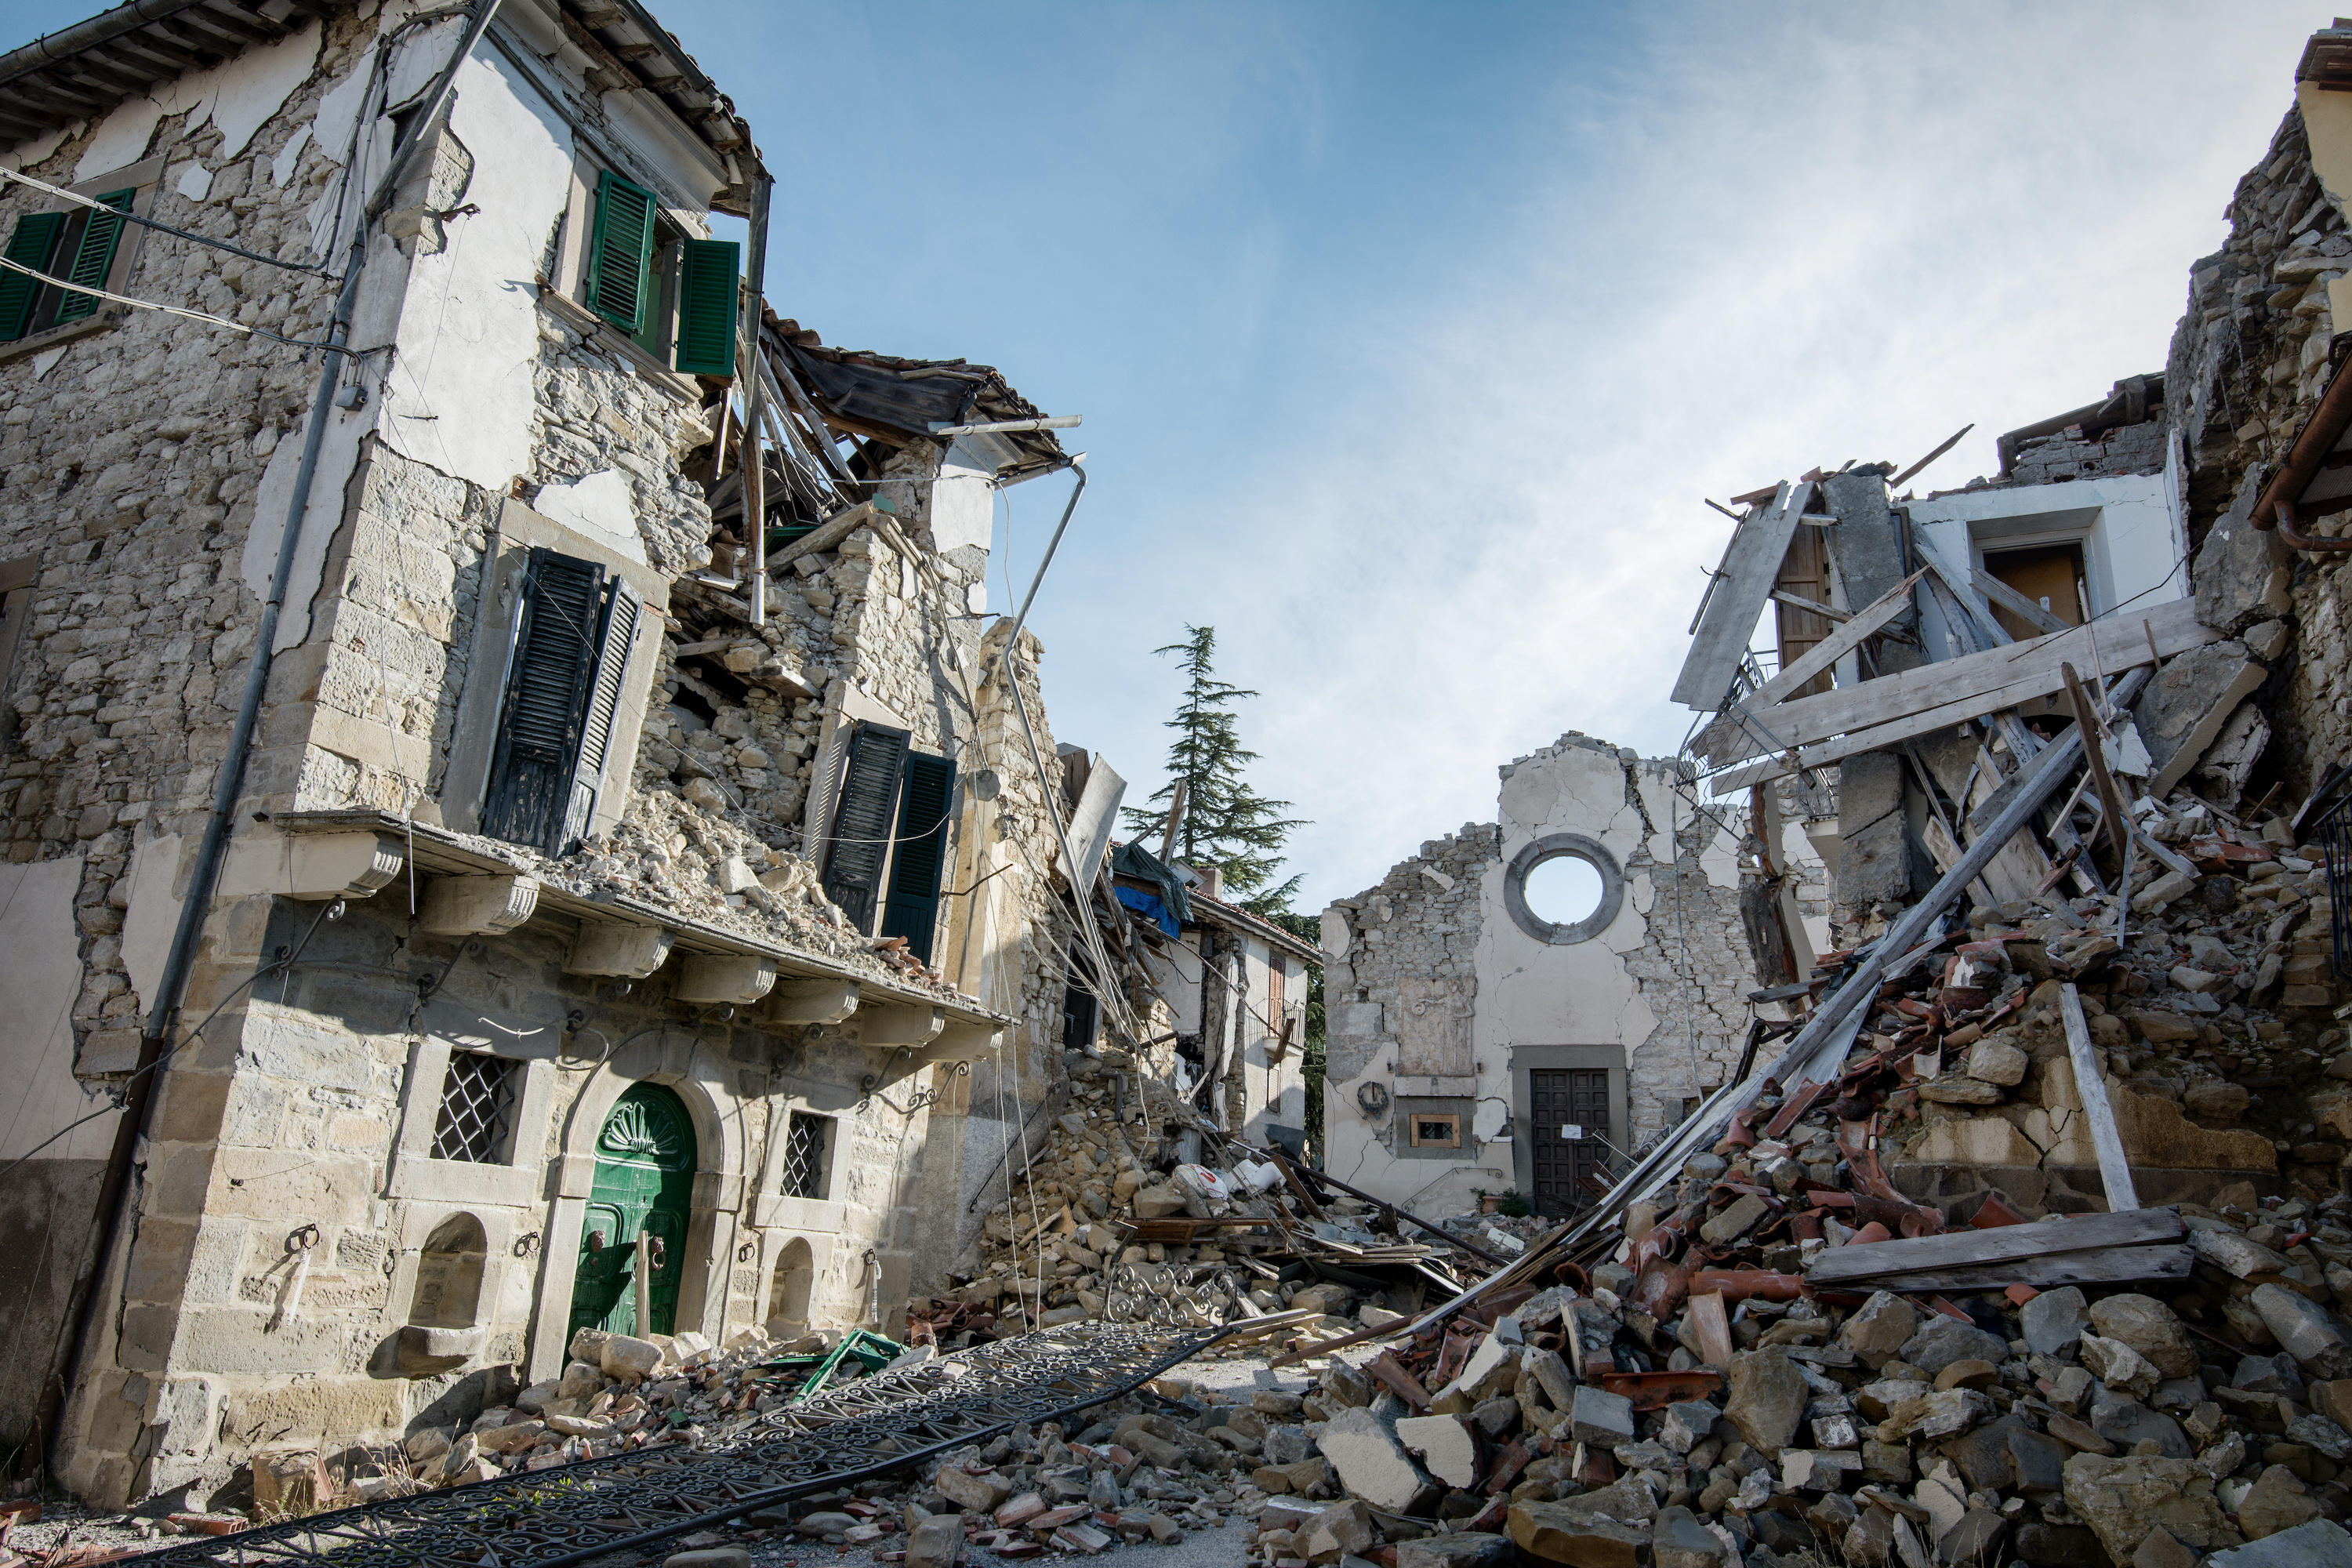 Le risque sismique prend en compte l'aléa sismique mais aussi la vulnérabilité des populations, notamment la capacité de résistance des constructions. © puckillustrations, Adobe Stock